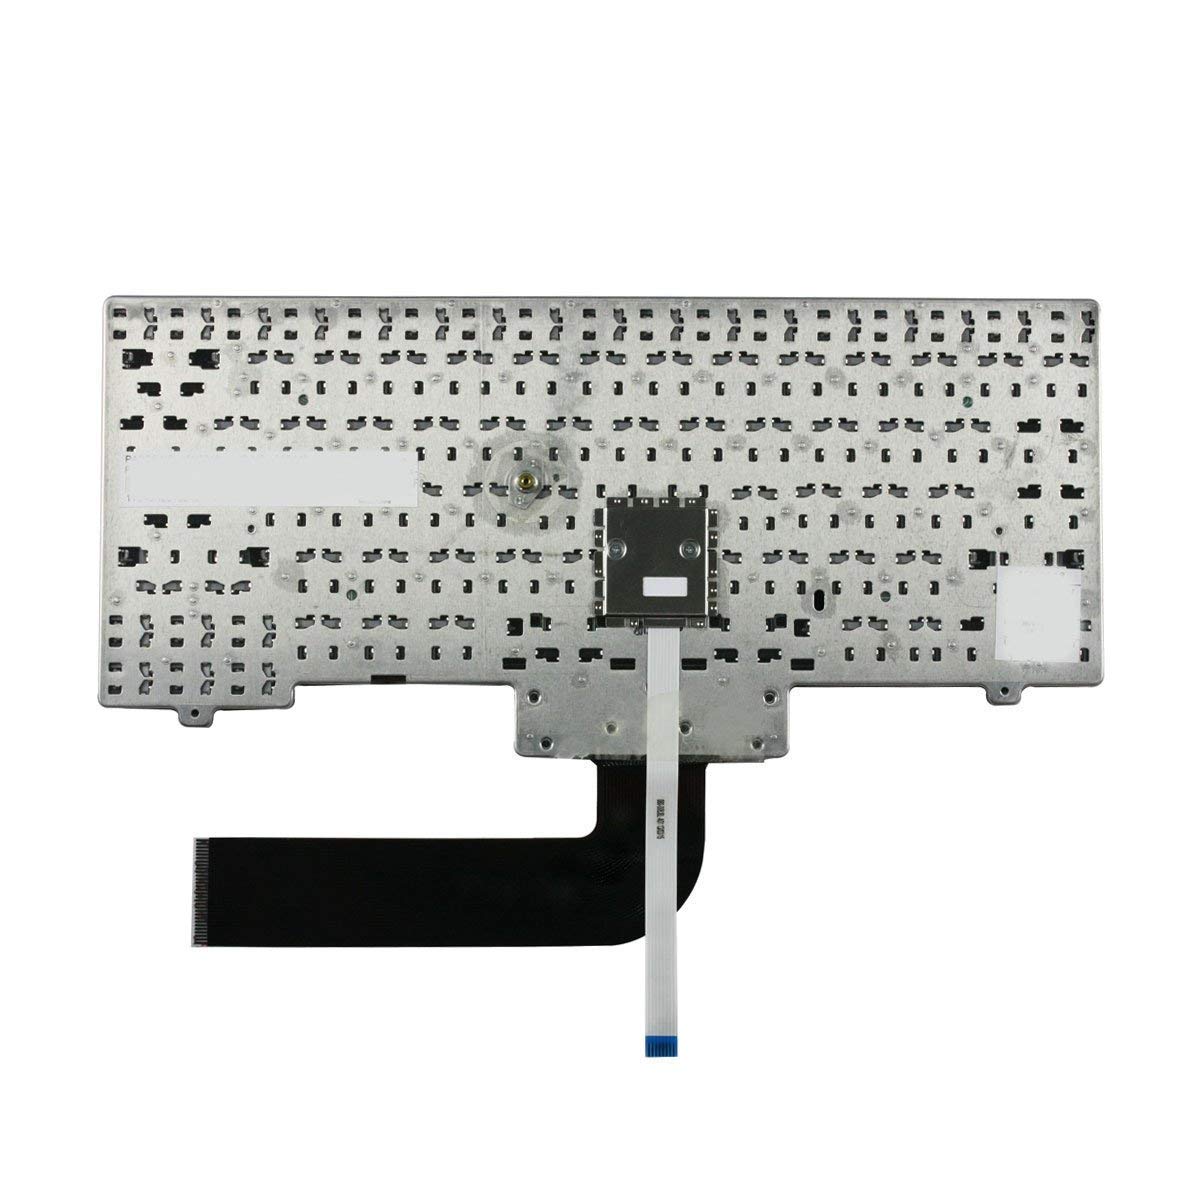 WISTAR Laptop Keyboard Compatible for Lenovo ThinkPad SL410 SL412 SL510 L410 L510 L512 L520